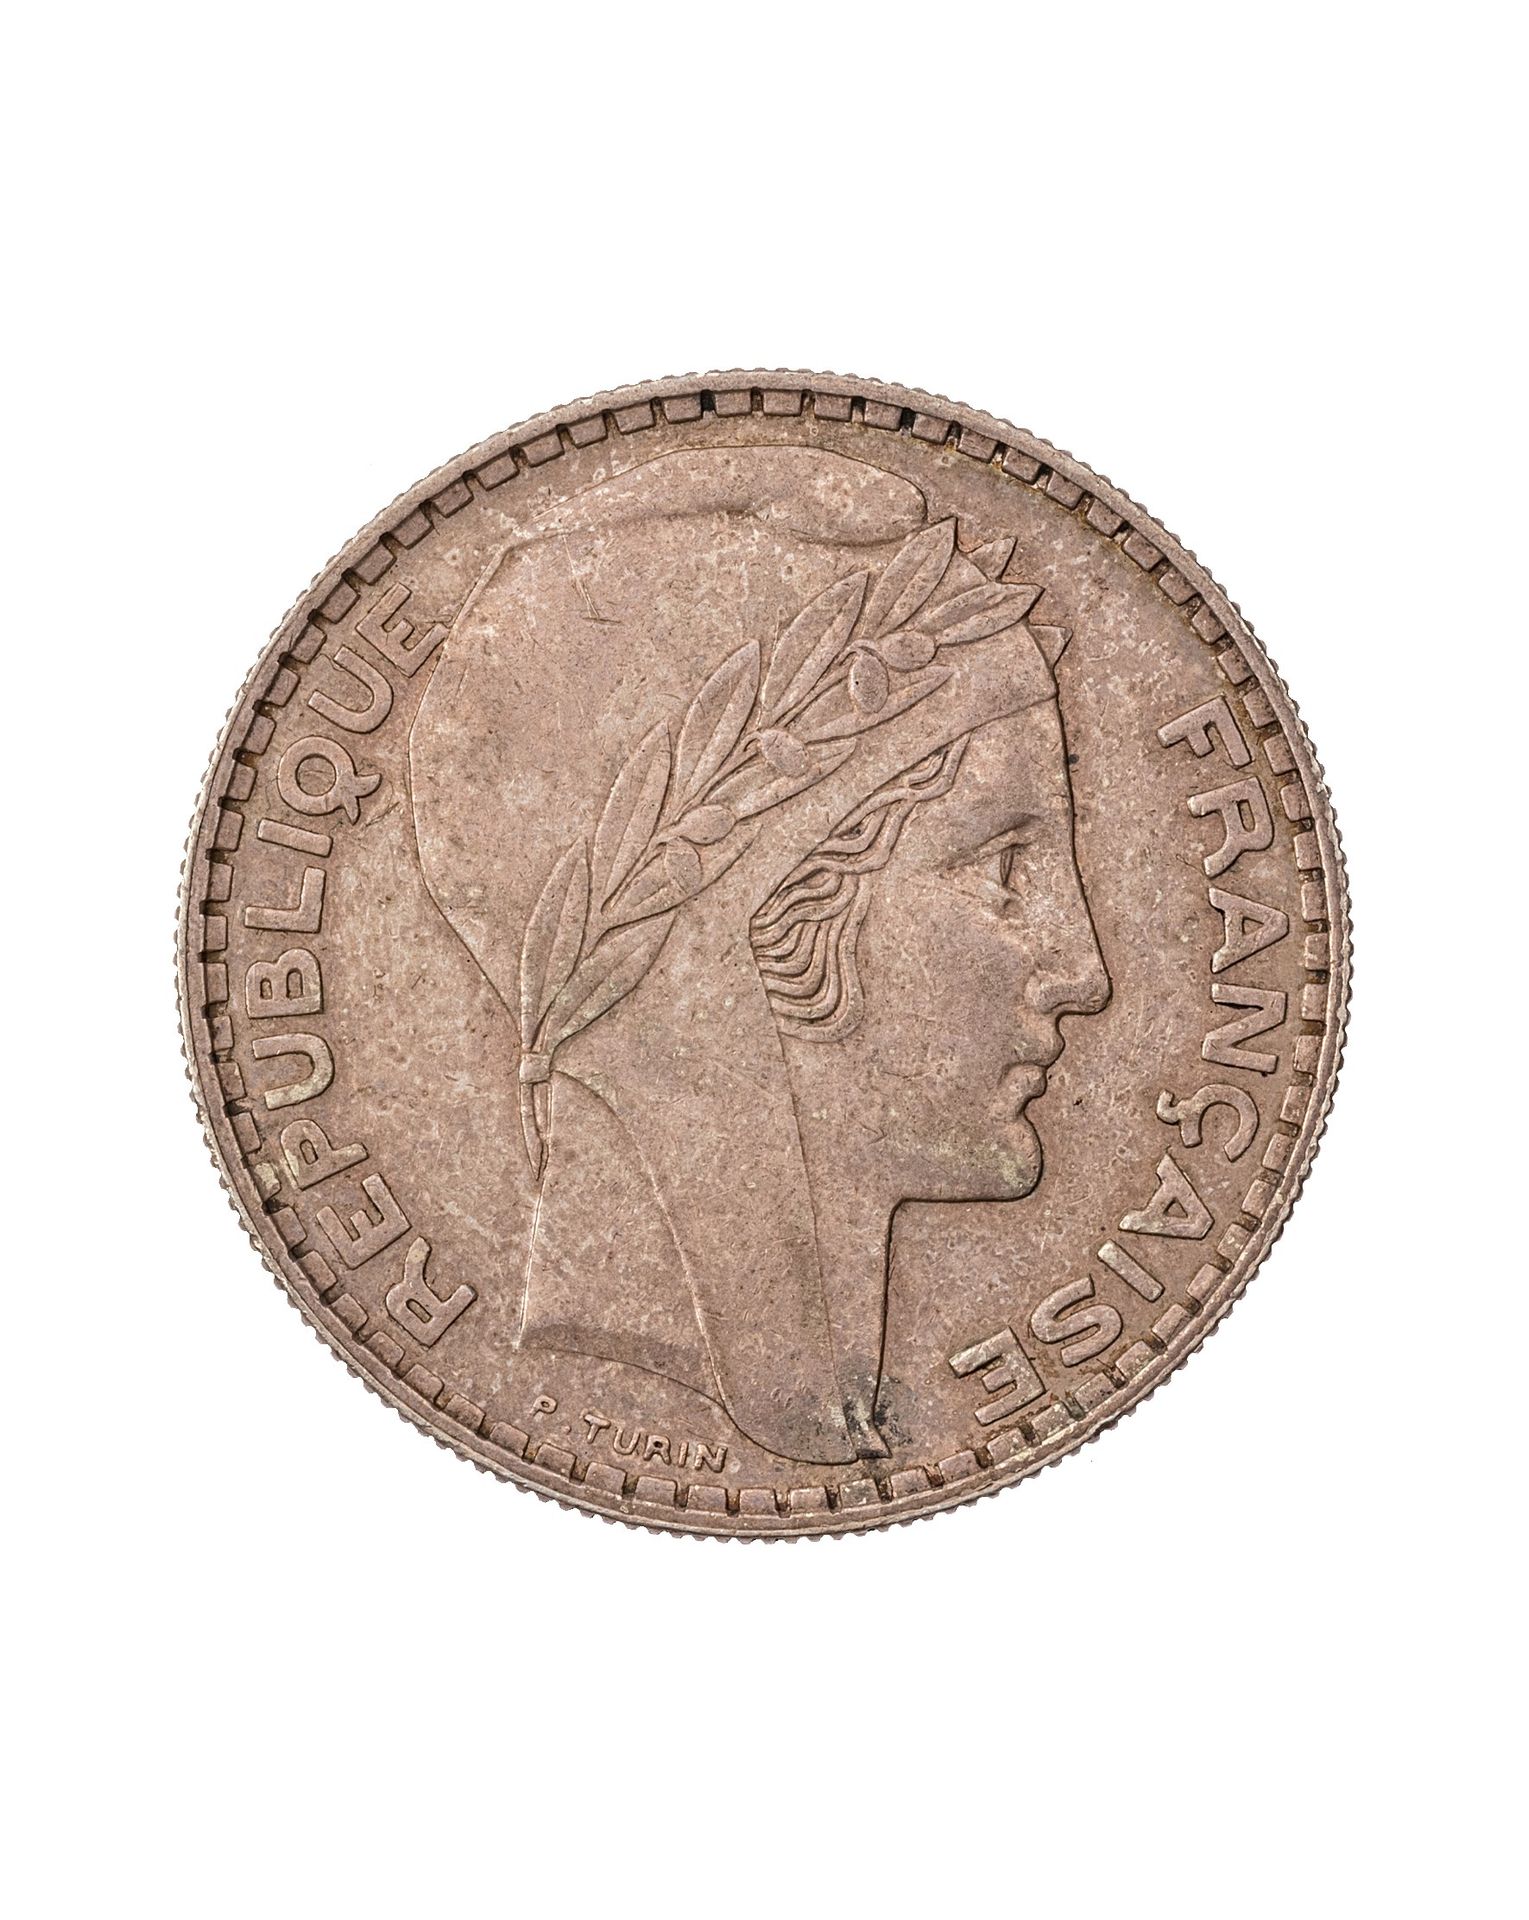 Null FRANCIA

3ª REPÚBLICA 

20 francos en plata grabada por Turín 1936 

El fra&hellip;